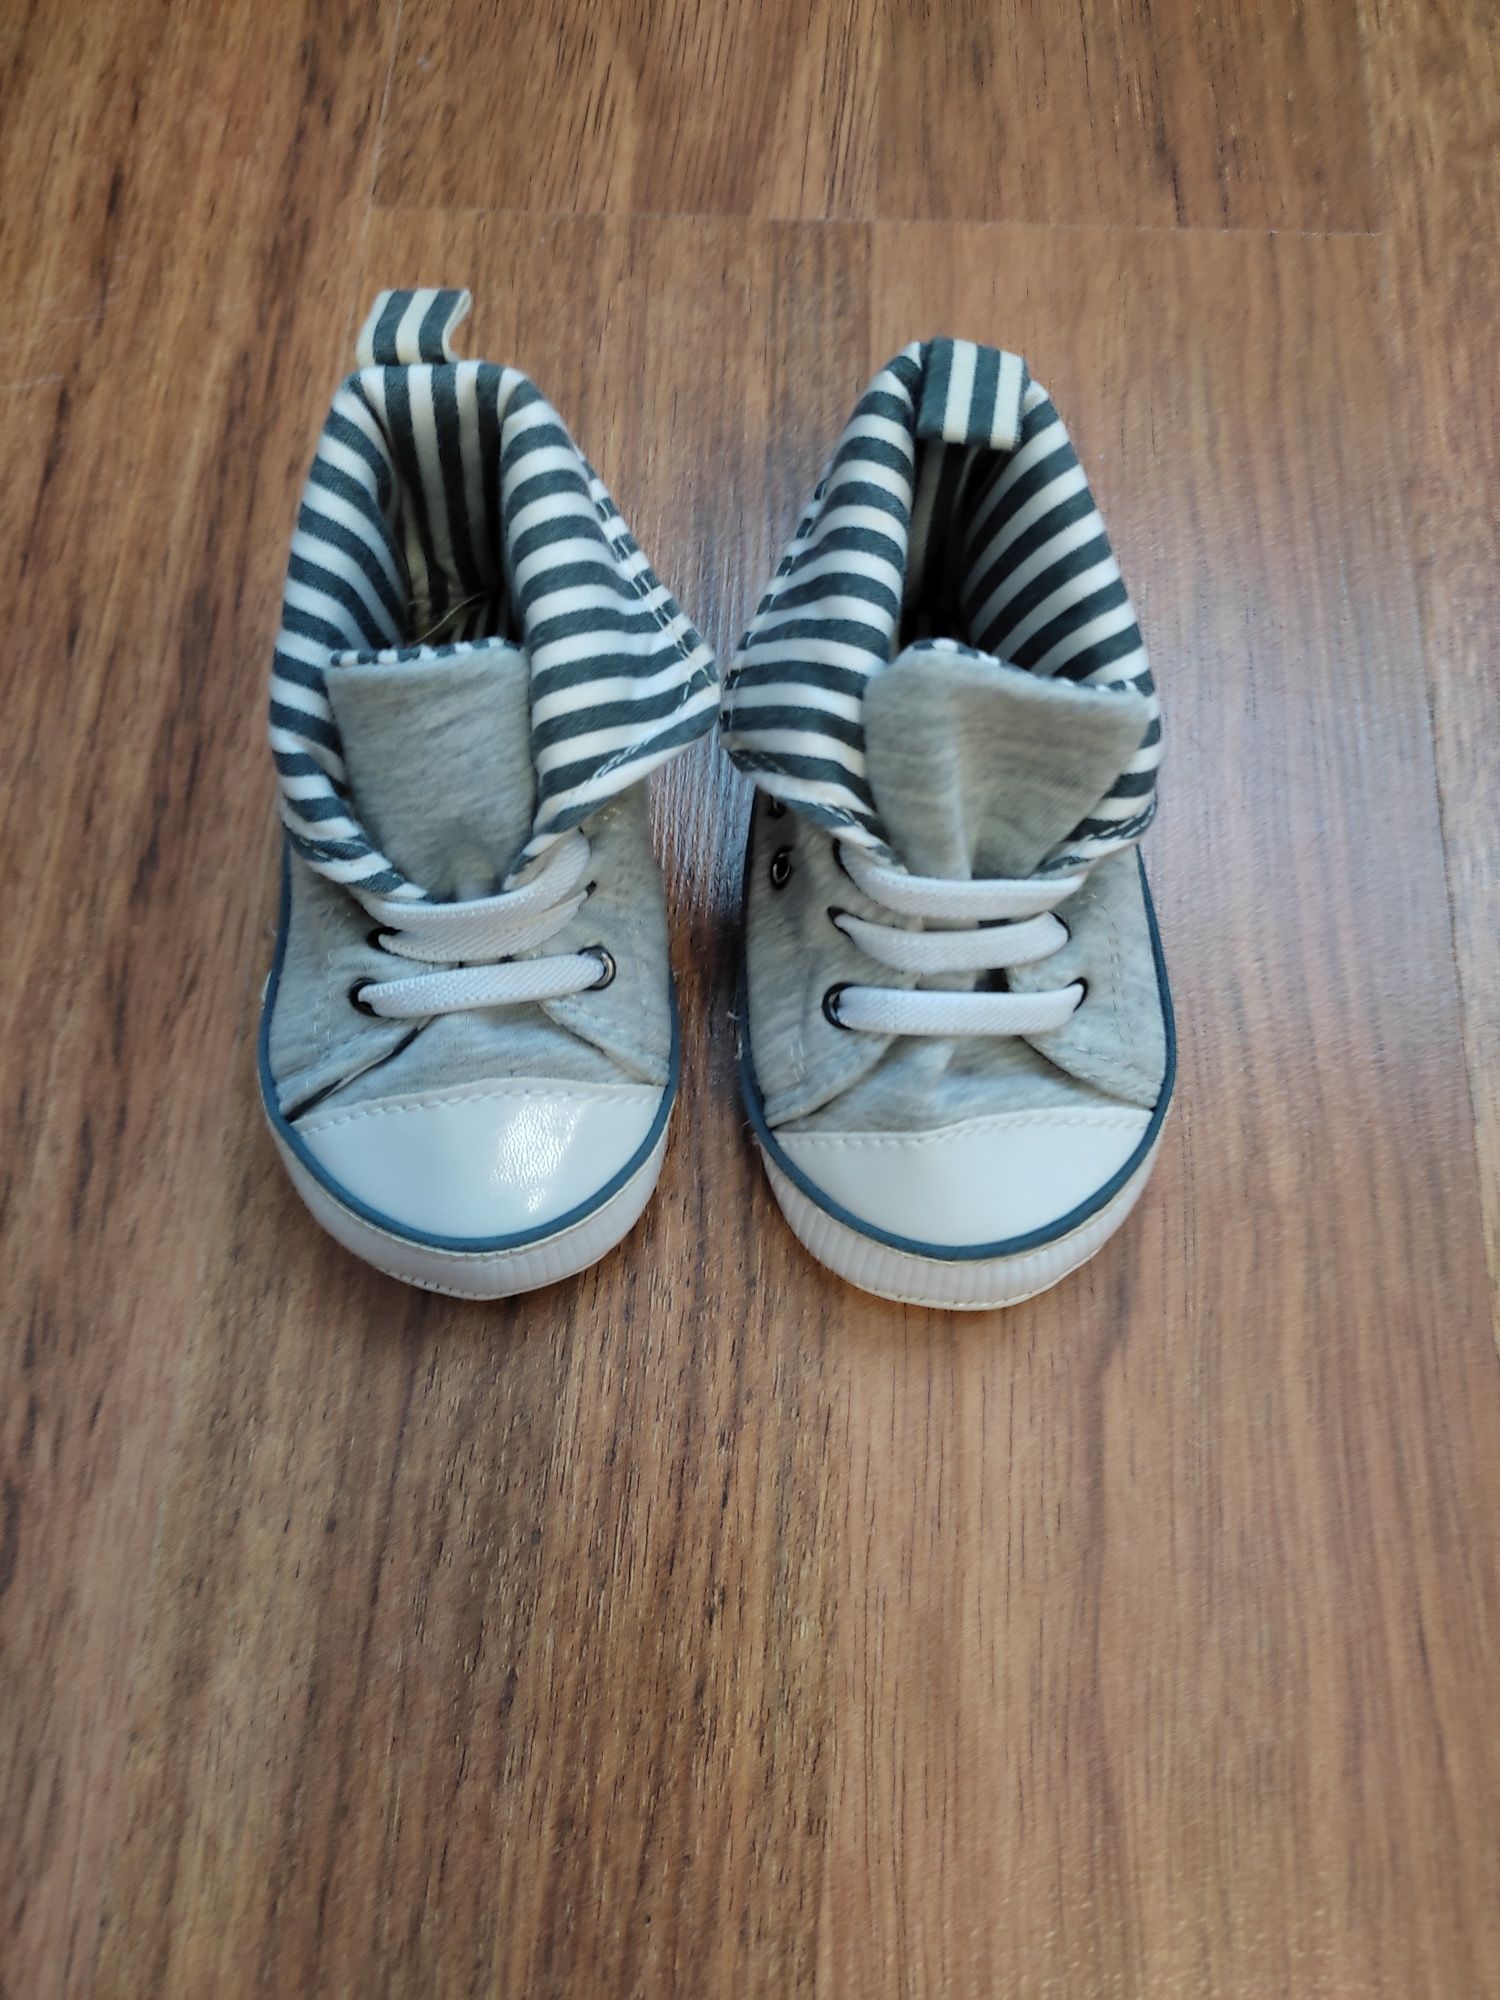 Пінетки. Взуття для новонароджених